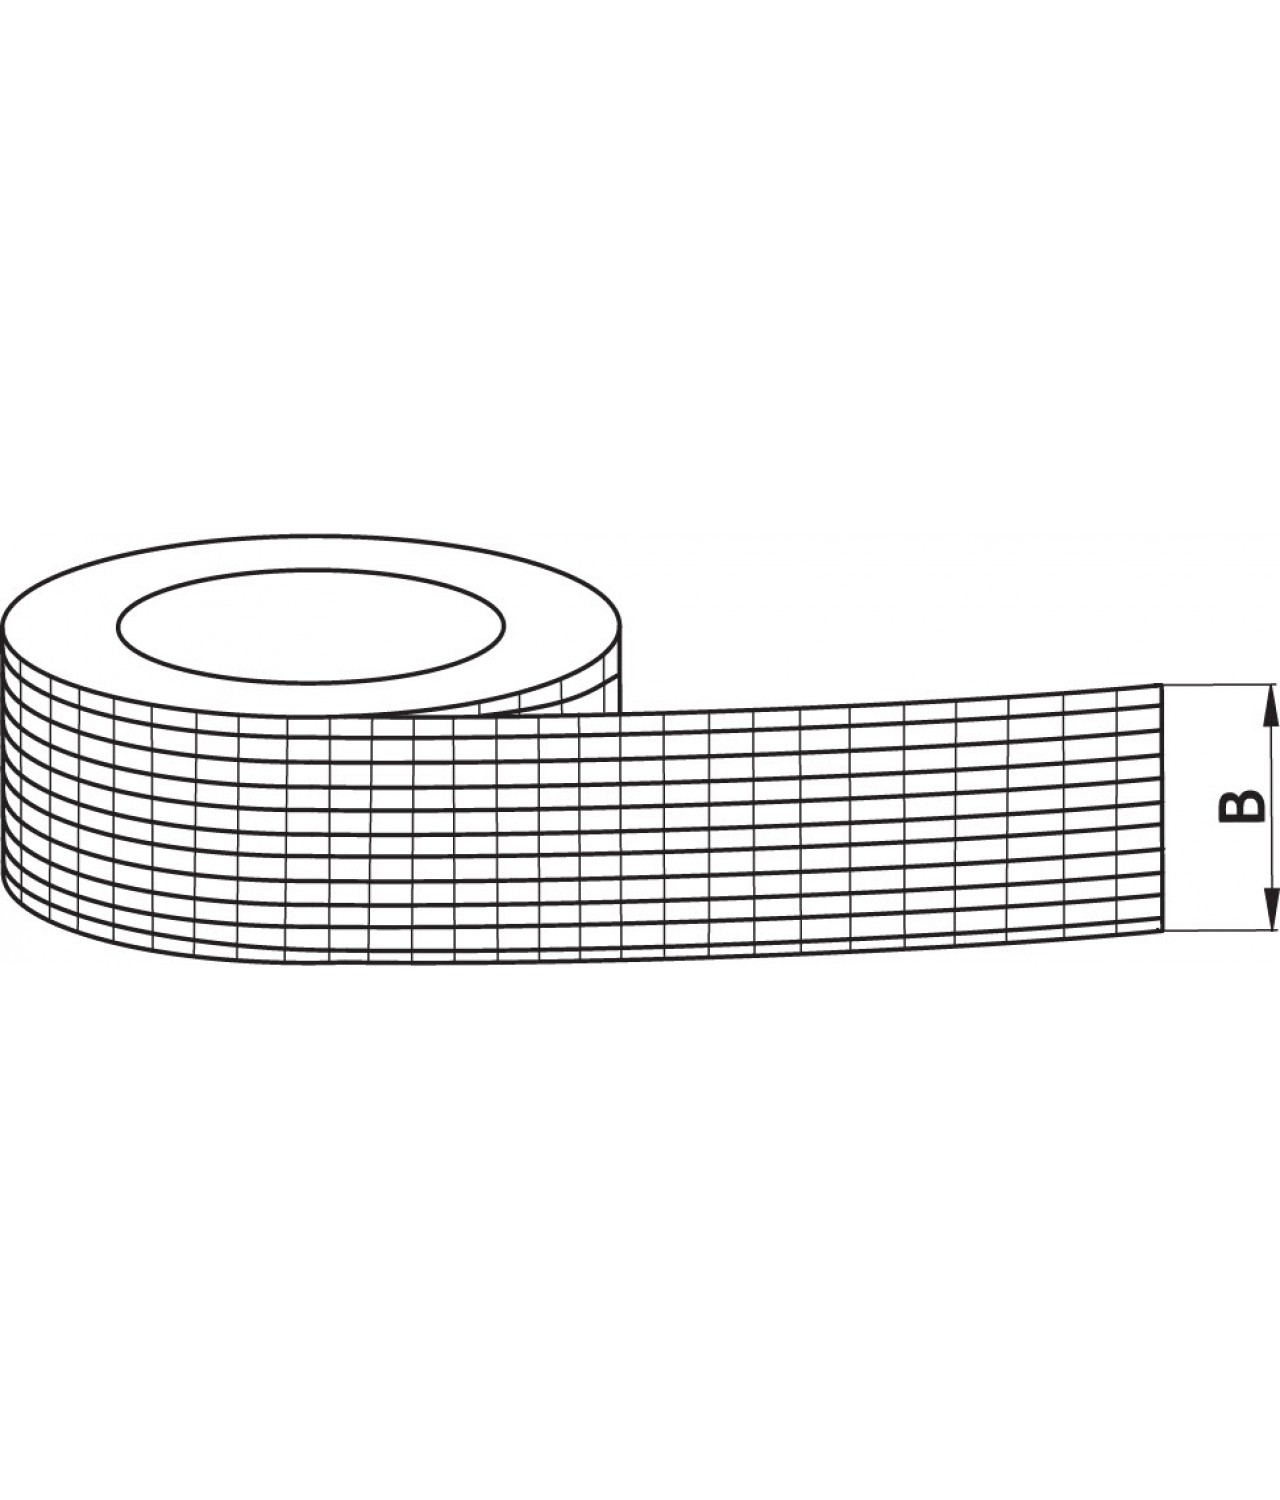 Aлюминиевая лента армированная AS256/72, толщина 190 µm, 7.2 cм x 45 м, -40 - +120 °C, 1